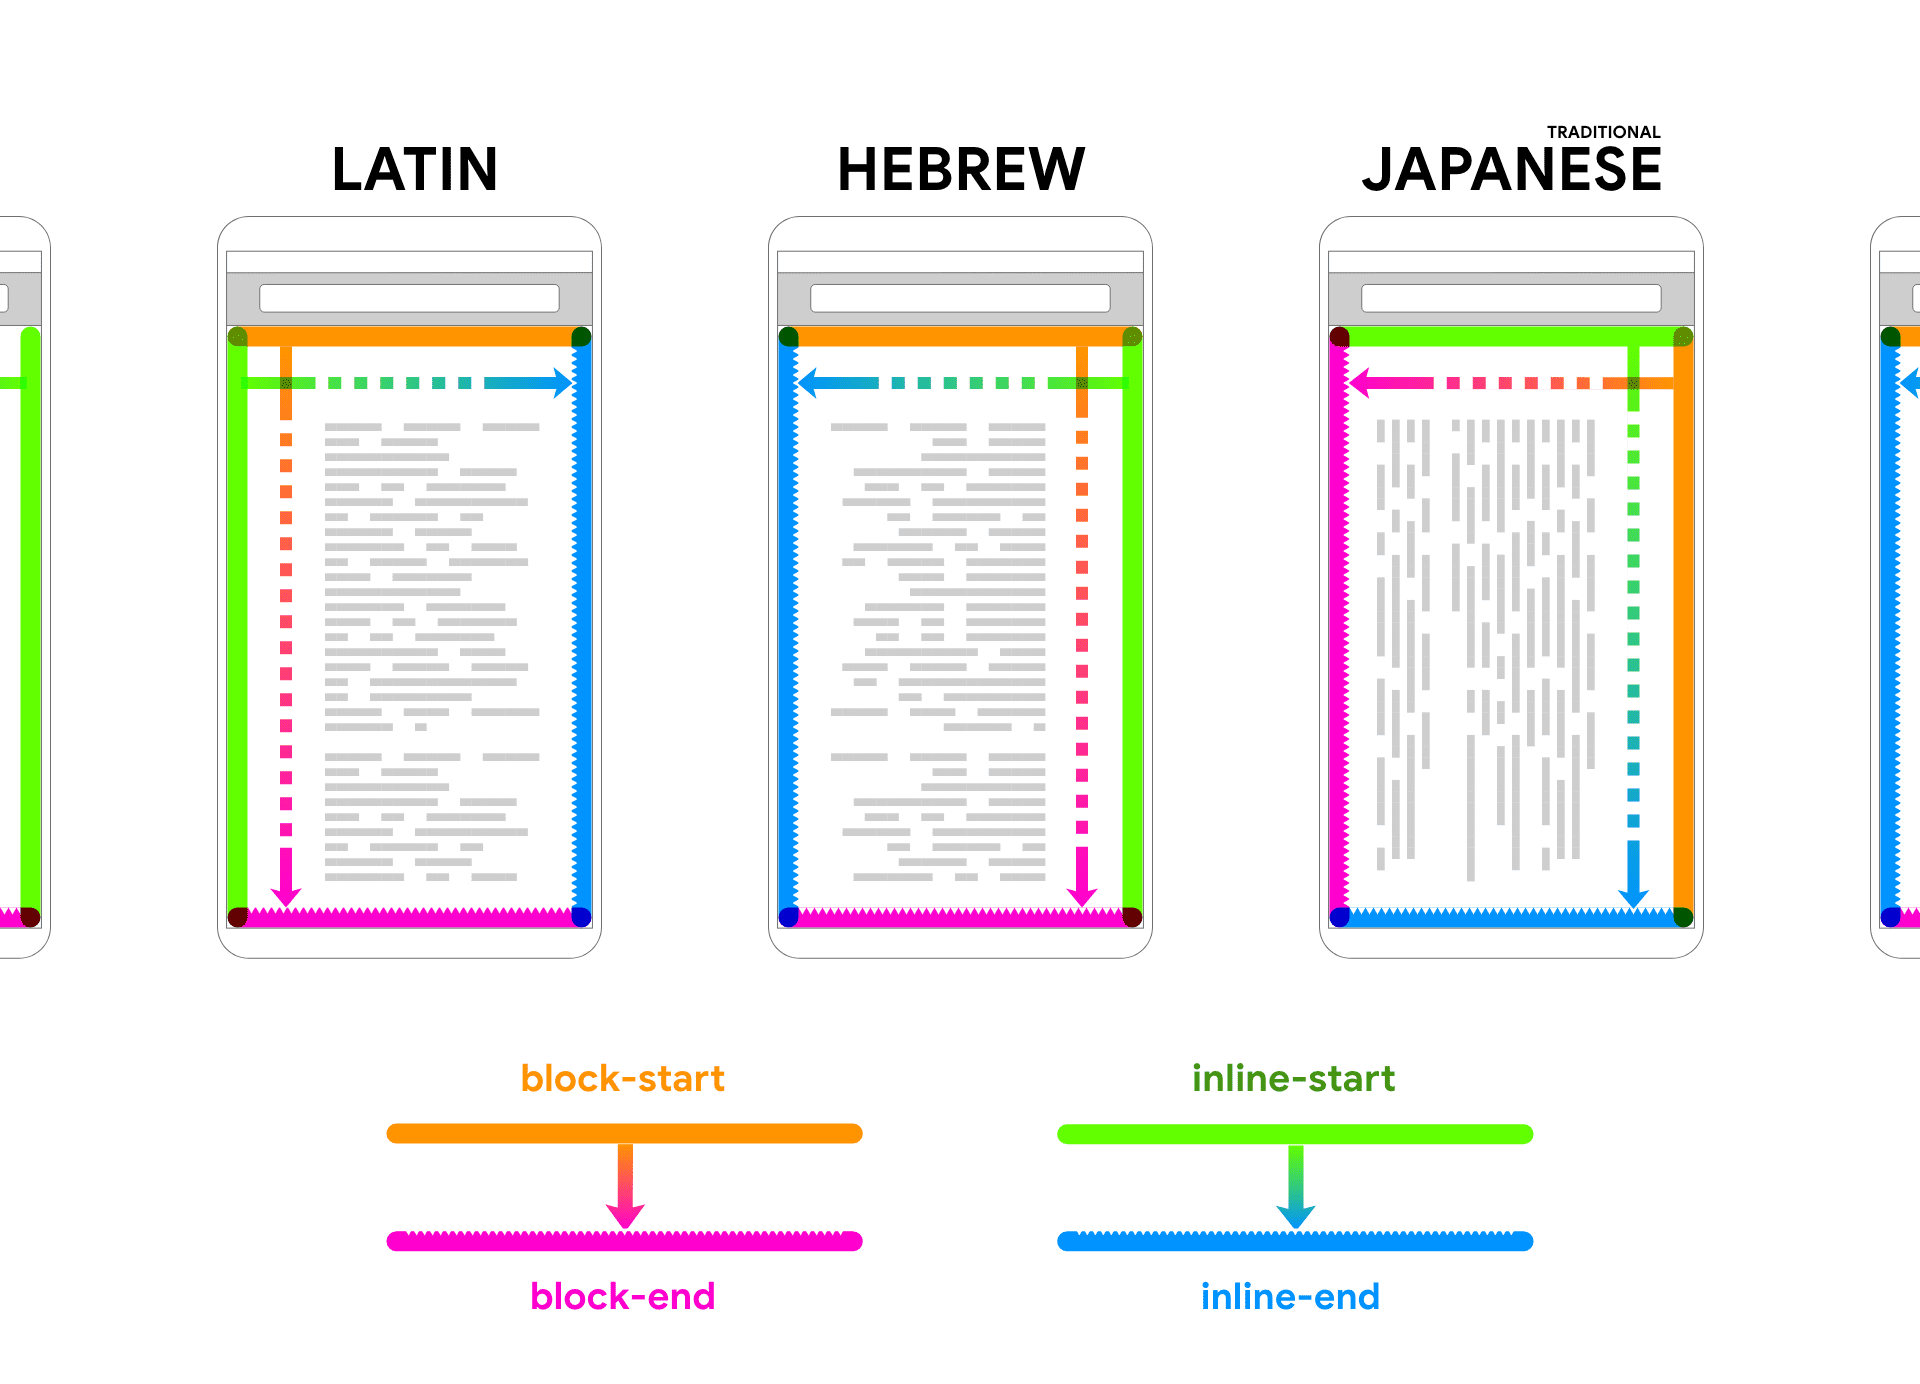 裝置框內顯示拉丁、希伯來文和日文的保留預留位置文字。箭頭和顏色會隨文字顯示，為 2 個區塊和內嵌方向建立關聯。